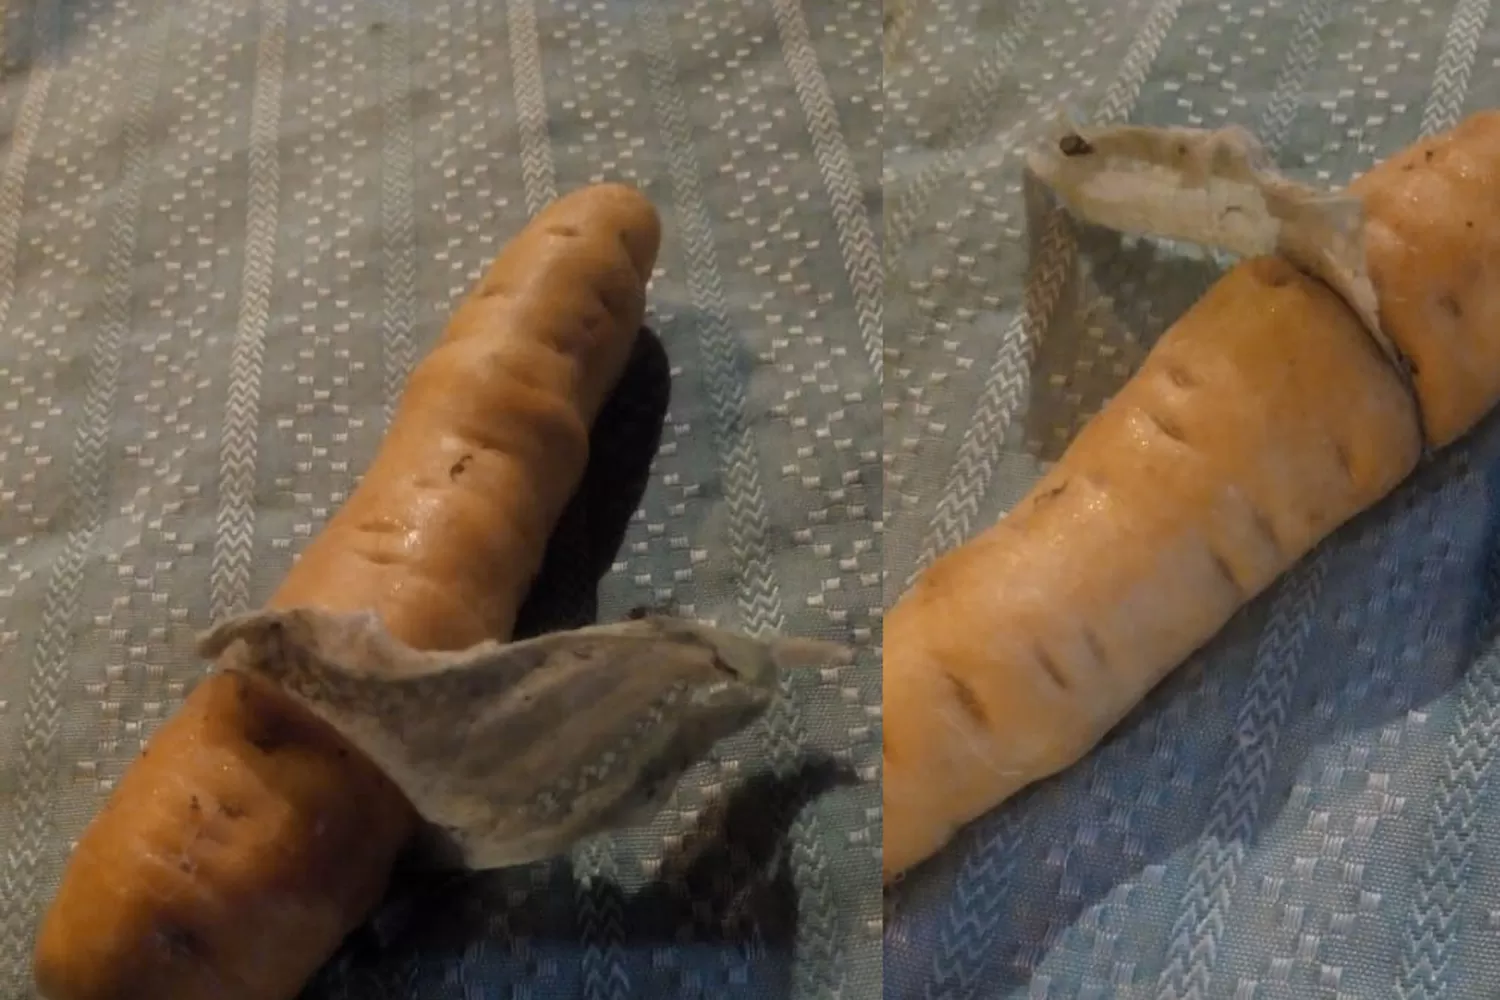 CON UN PEDAZO DE PAÑAL. Un vecino compró zanahorias y una llegó con una amarga sorpresa.